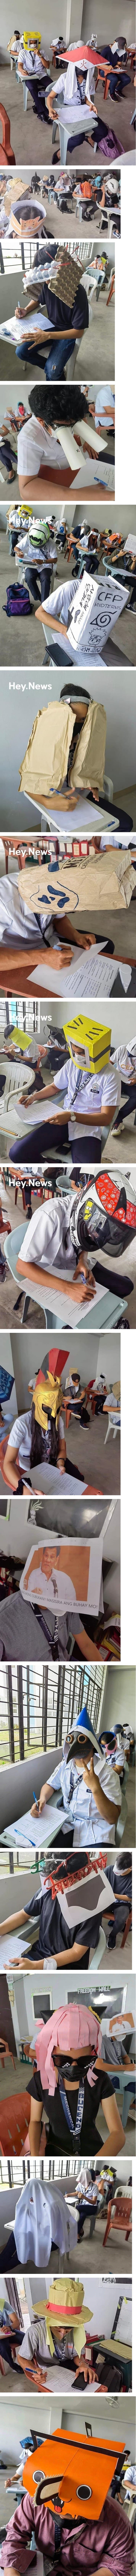 필리핀 대학의 컨닝 방지 모자